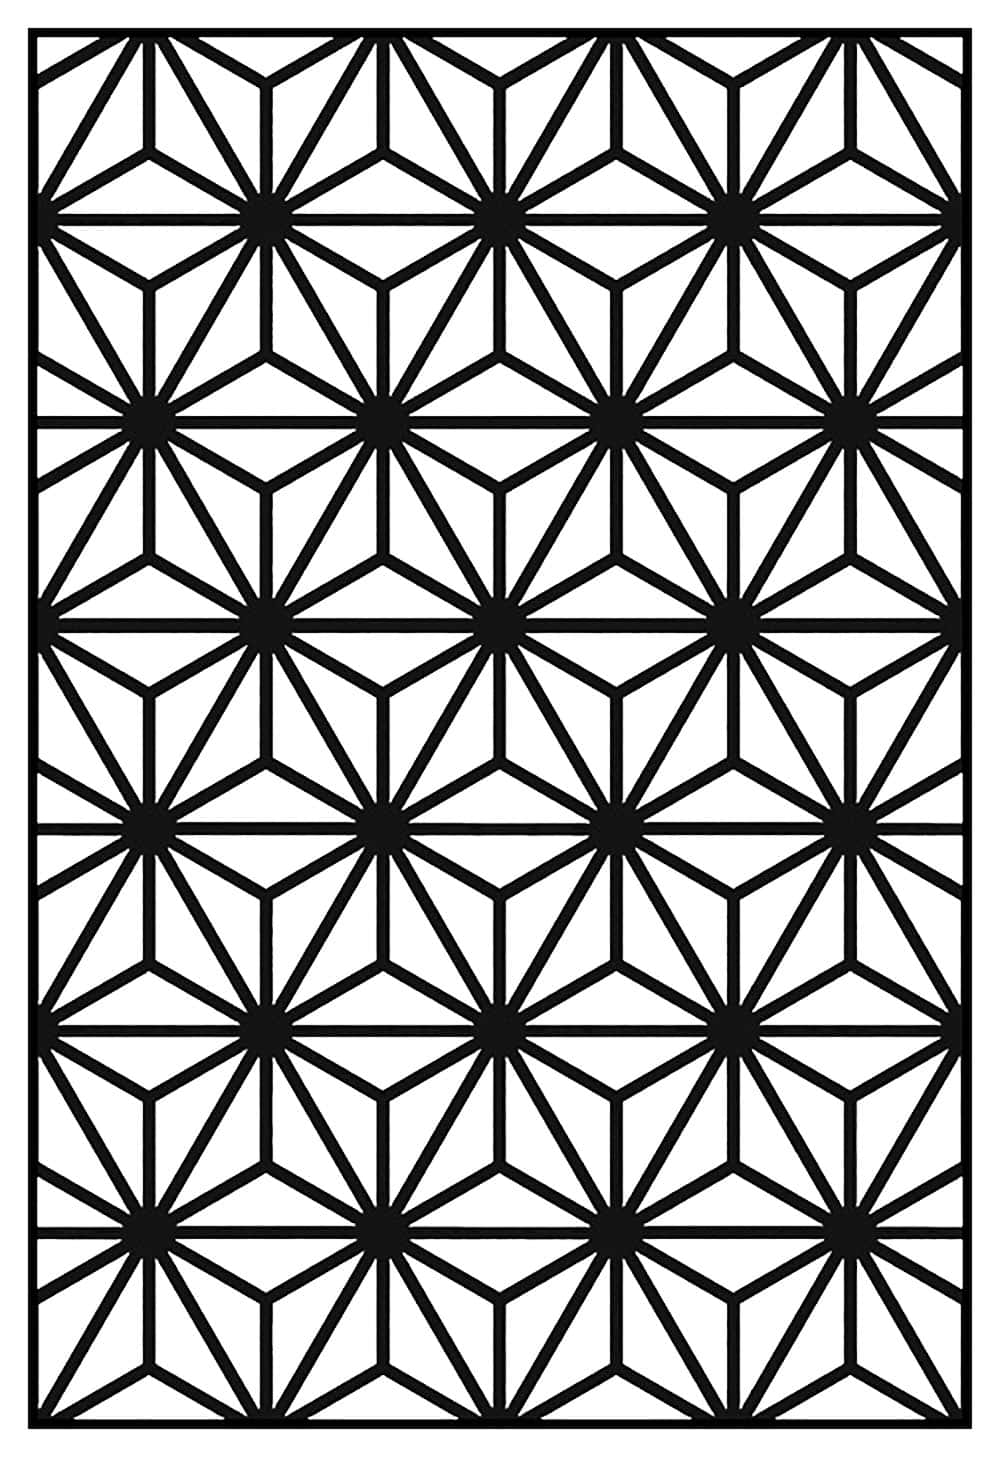 Imagende Patrón Geométrico En Blanco Y Negro Con Círculos.